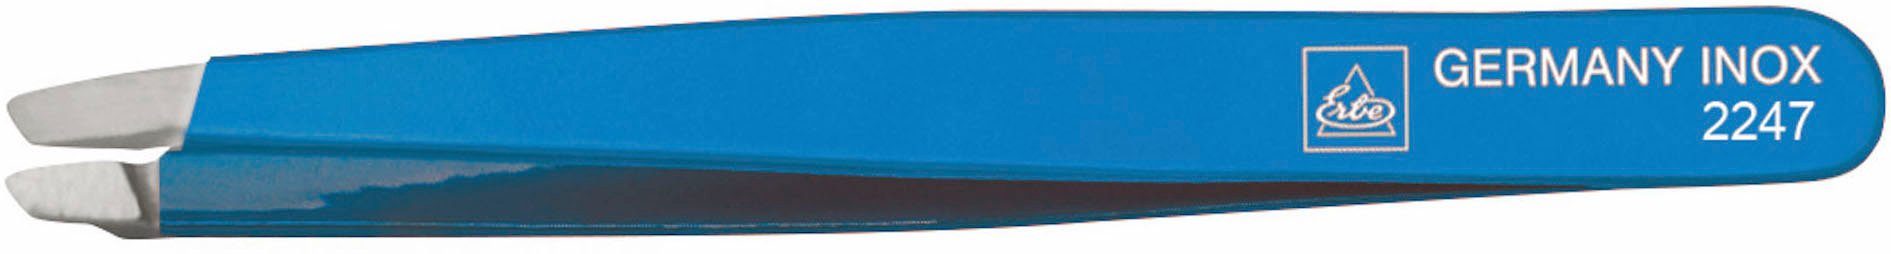 ERBE Pinzette, farbig lackiert kobalt | Pinzetten